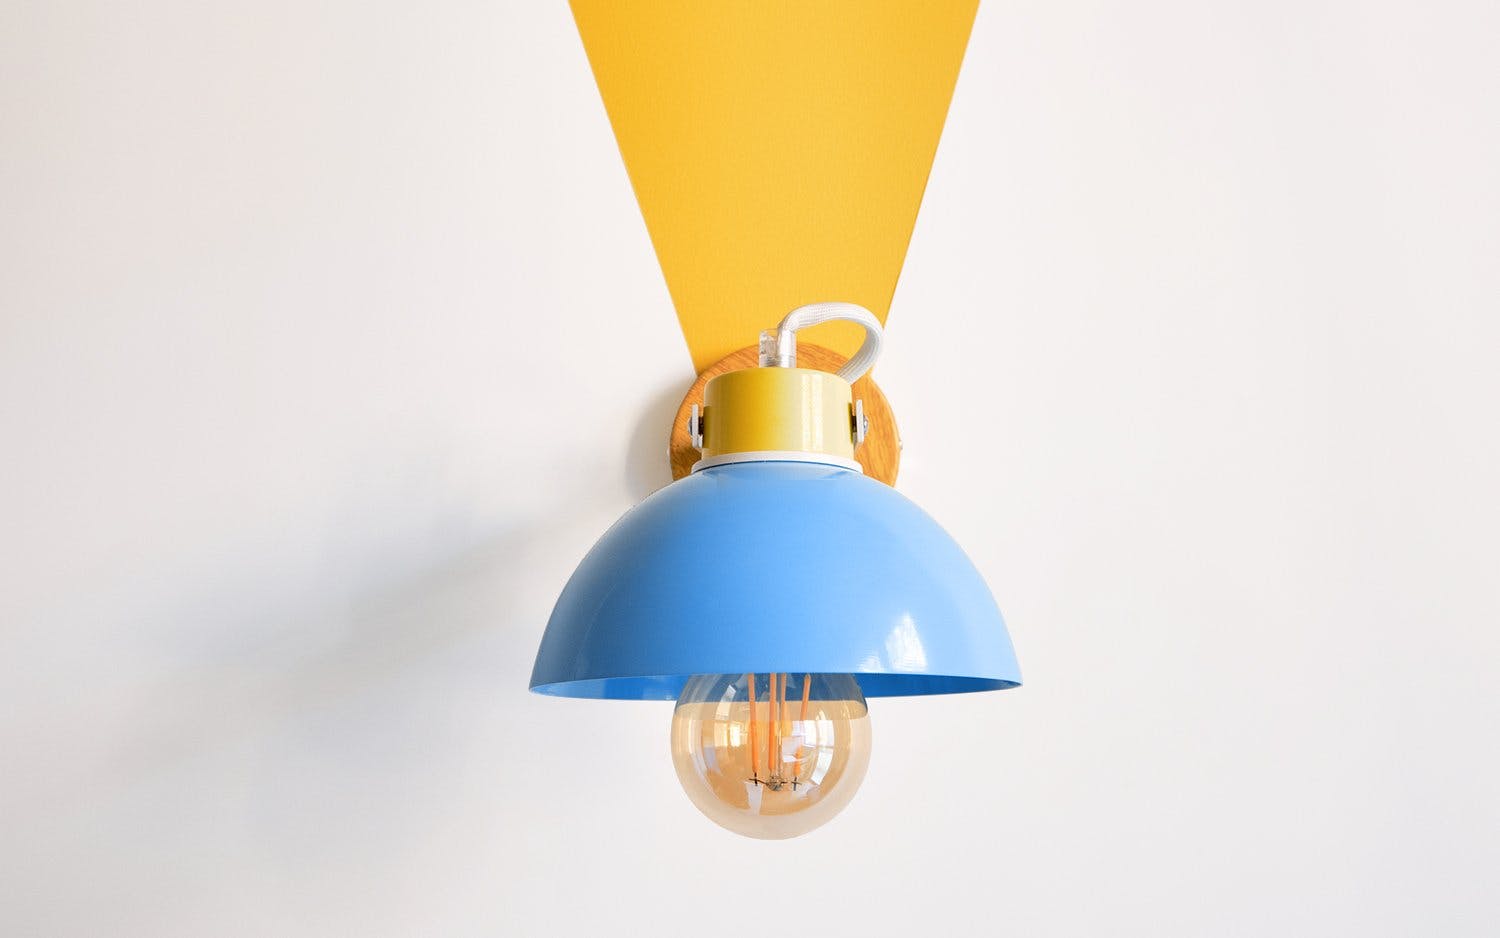 Lamp in shape of funnel